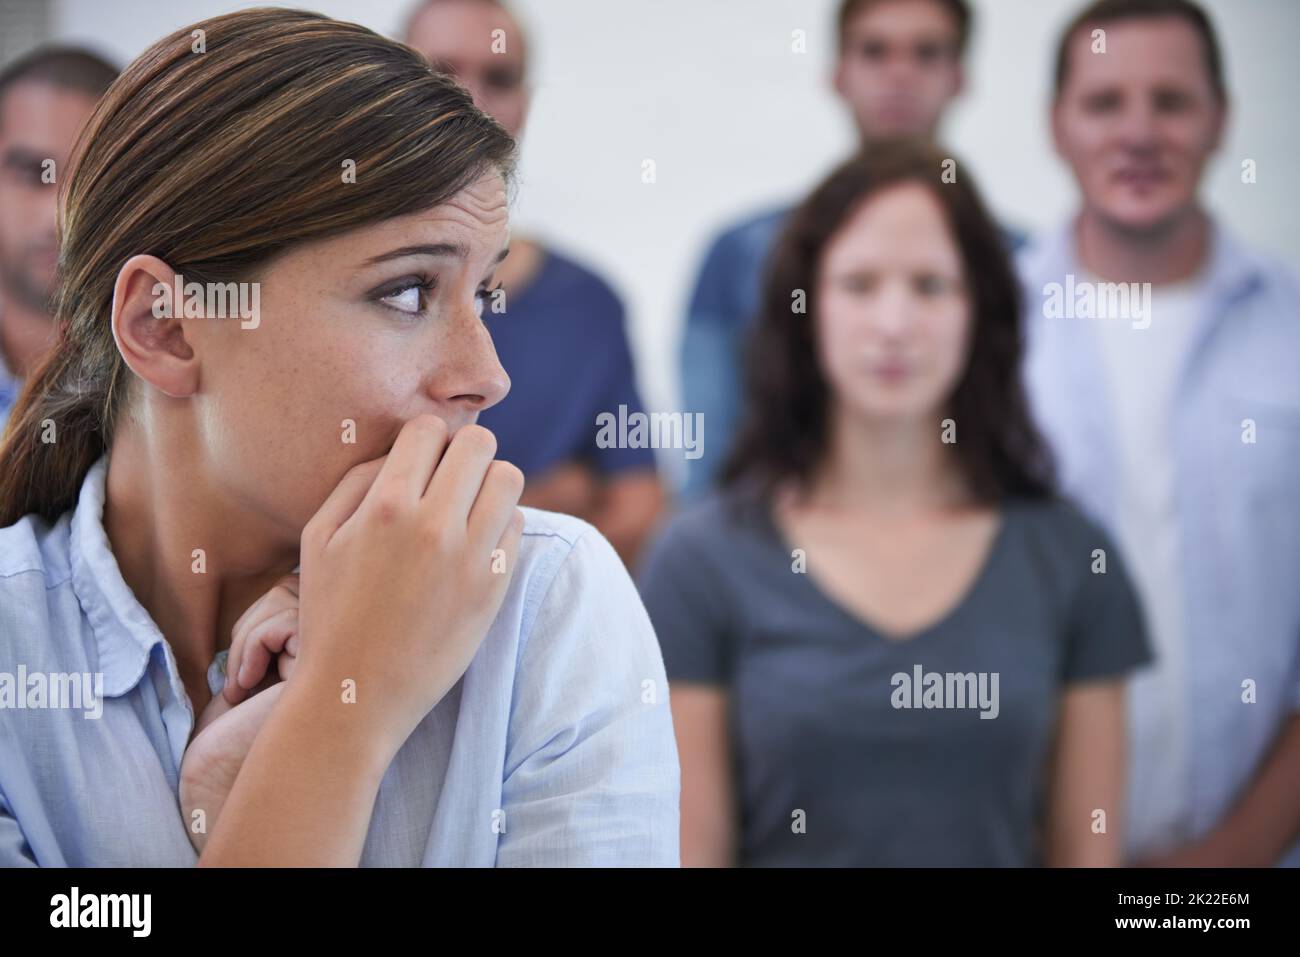 Was soll ich tun? Eine junge Frau, die vor ihren Kollegen nervös aussieht. Stockfoto